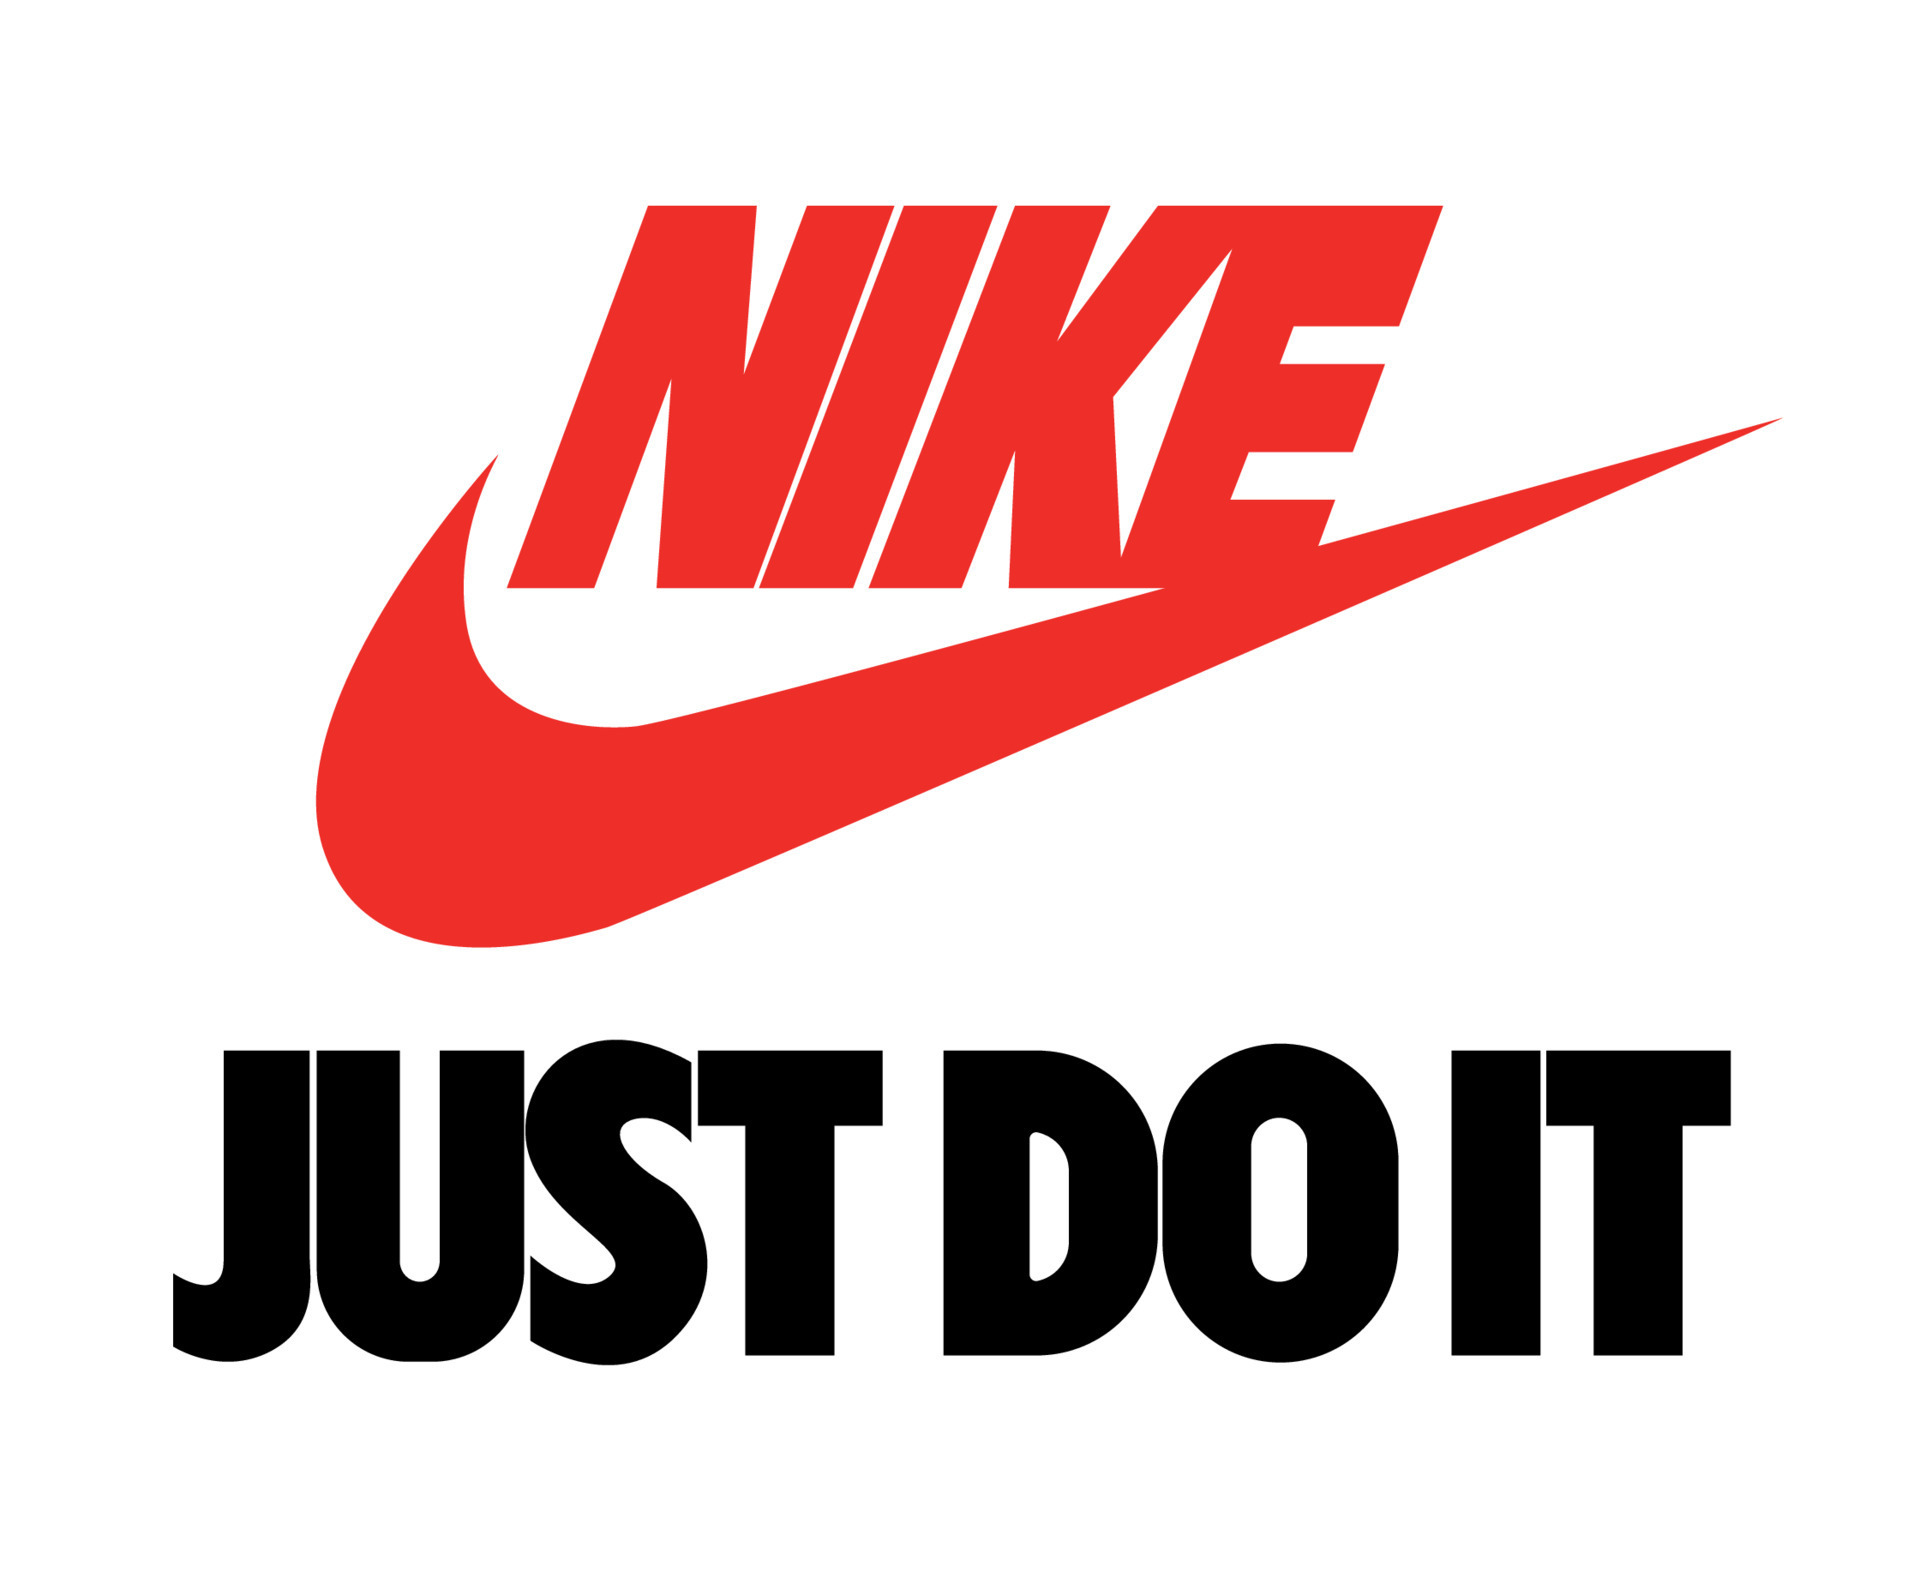 Nike thiết kế đồ sử dụng logo cho phong cách thể thao hoặc đường phố đều rất ấn tượng. Đến với hình ảnh này để thực sự cảm nhận sức lan tỏa của thương hiệu này.